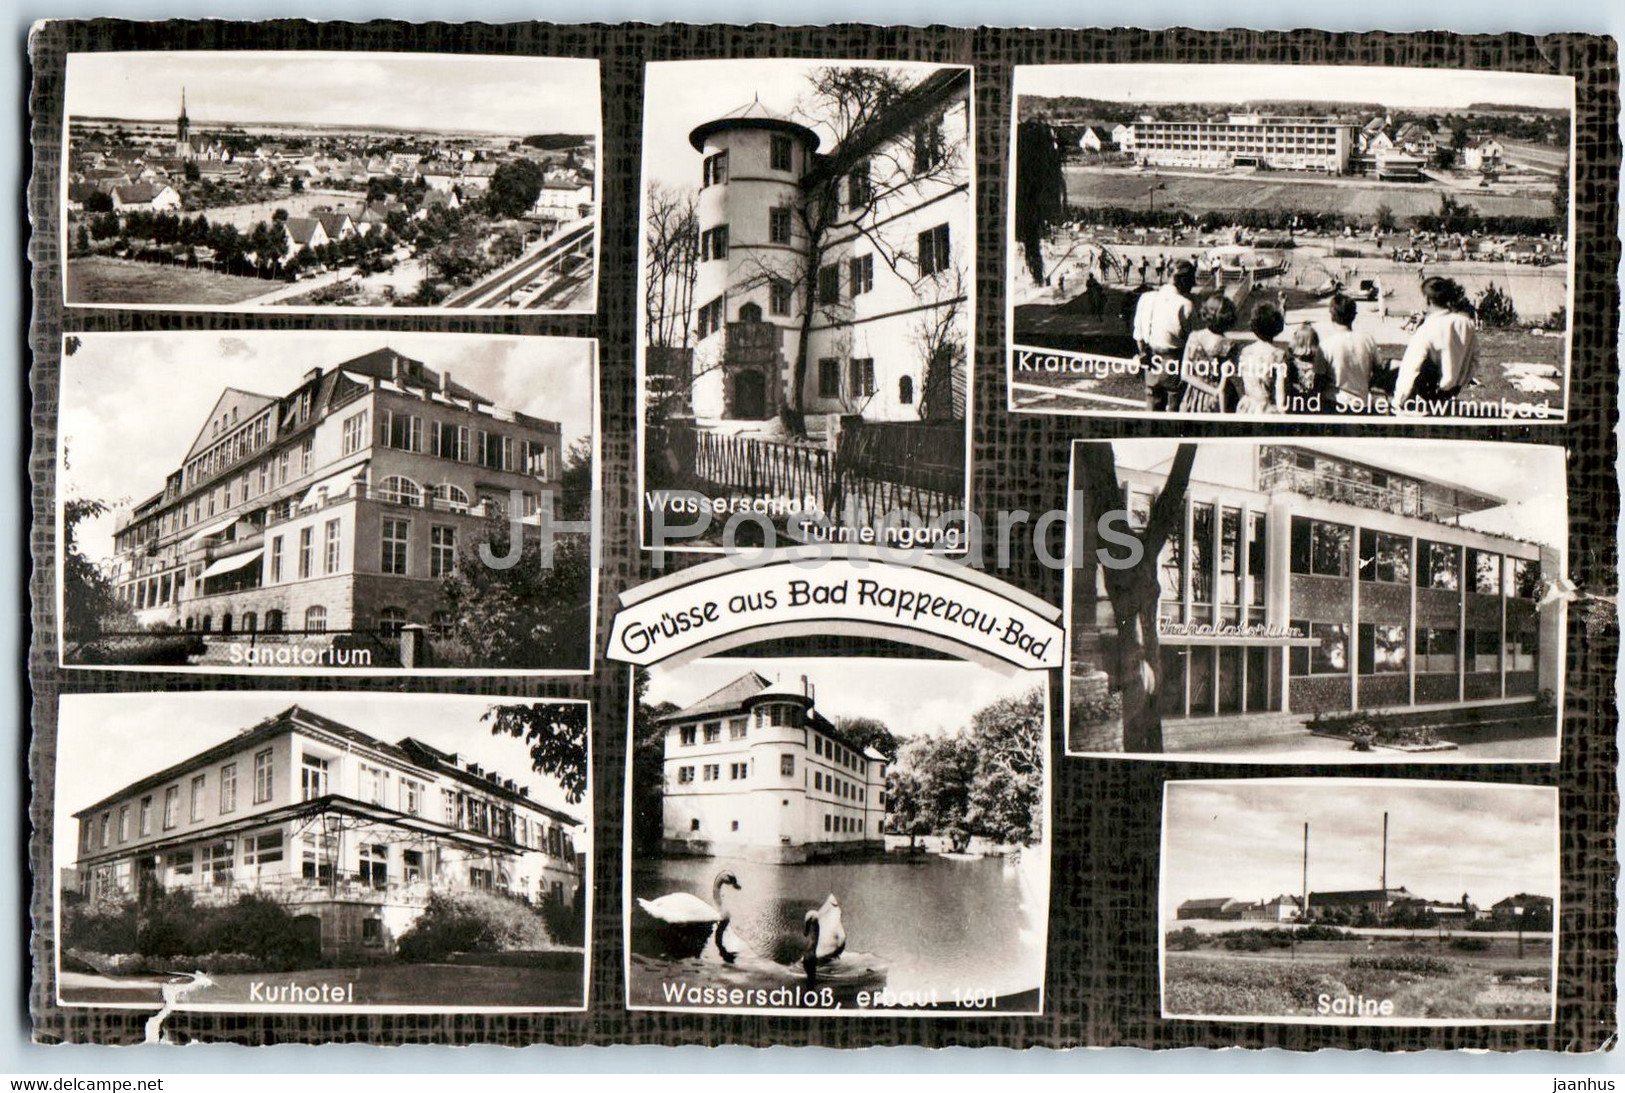 Grusse Aus Bad Rappenau - Old Postcard - Germany - Used - Bad Rappenau